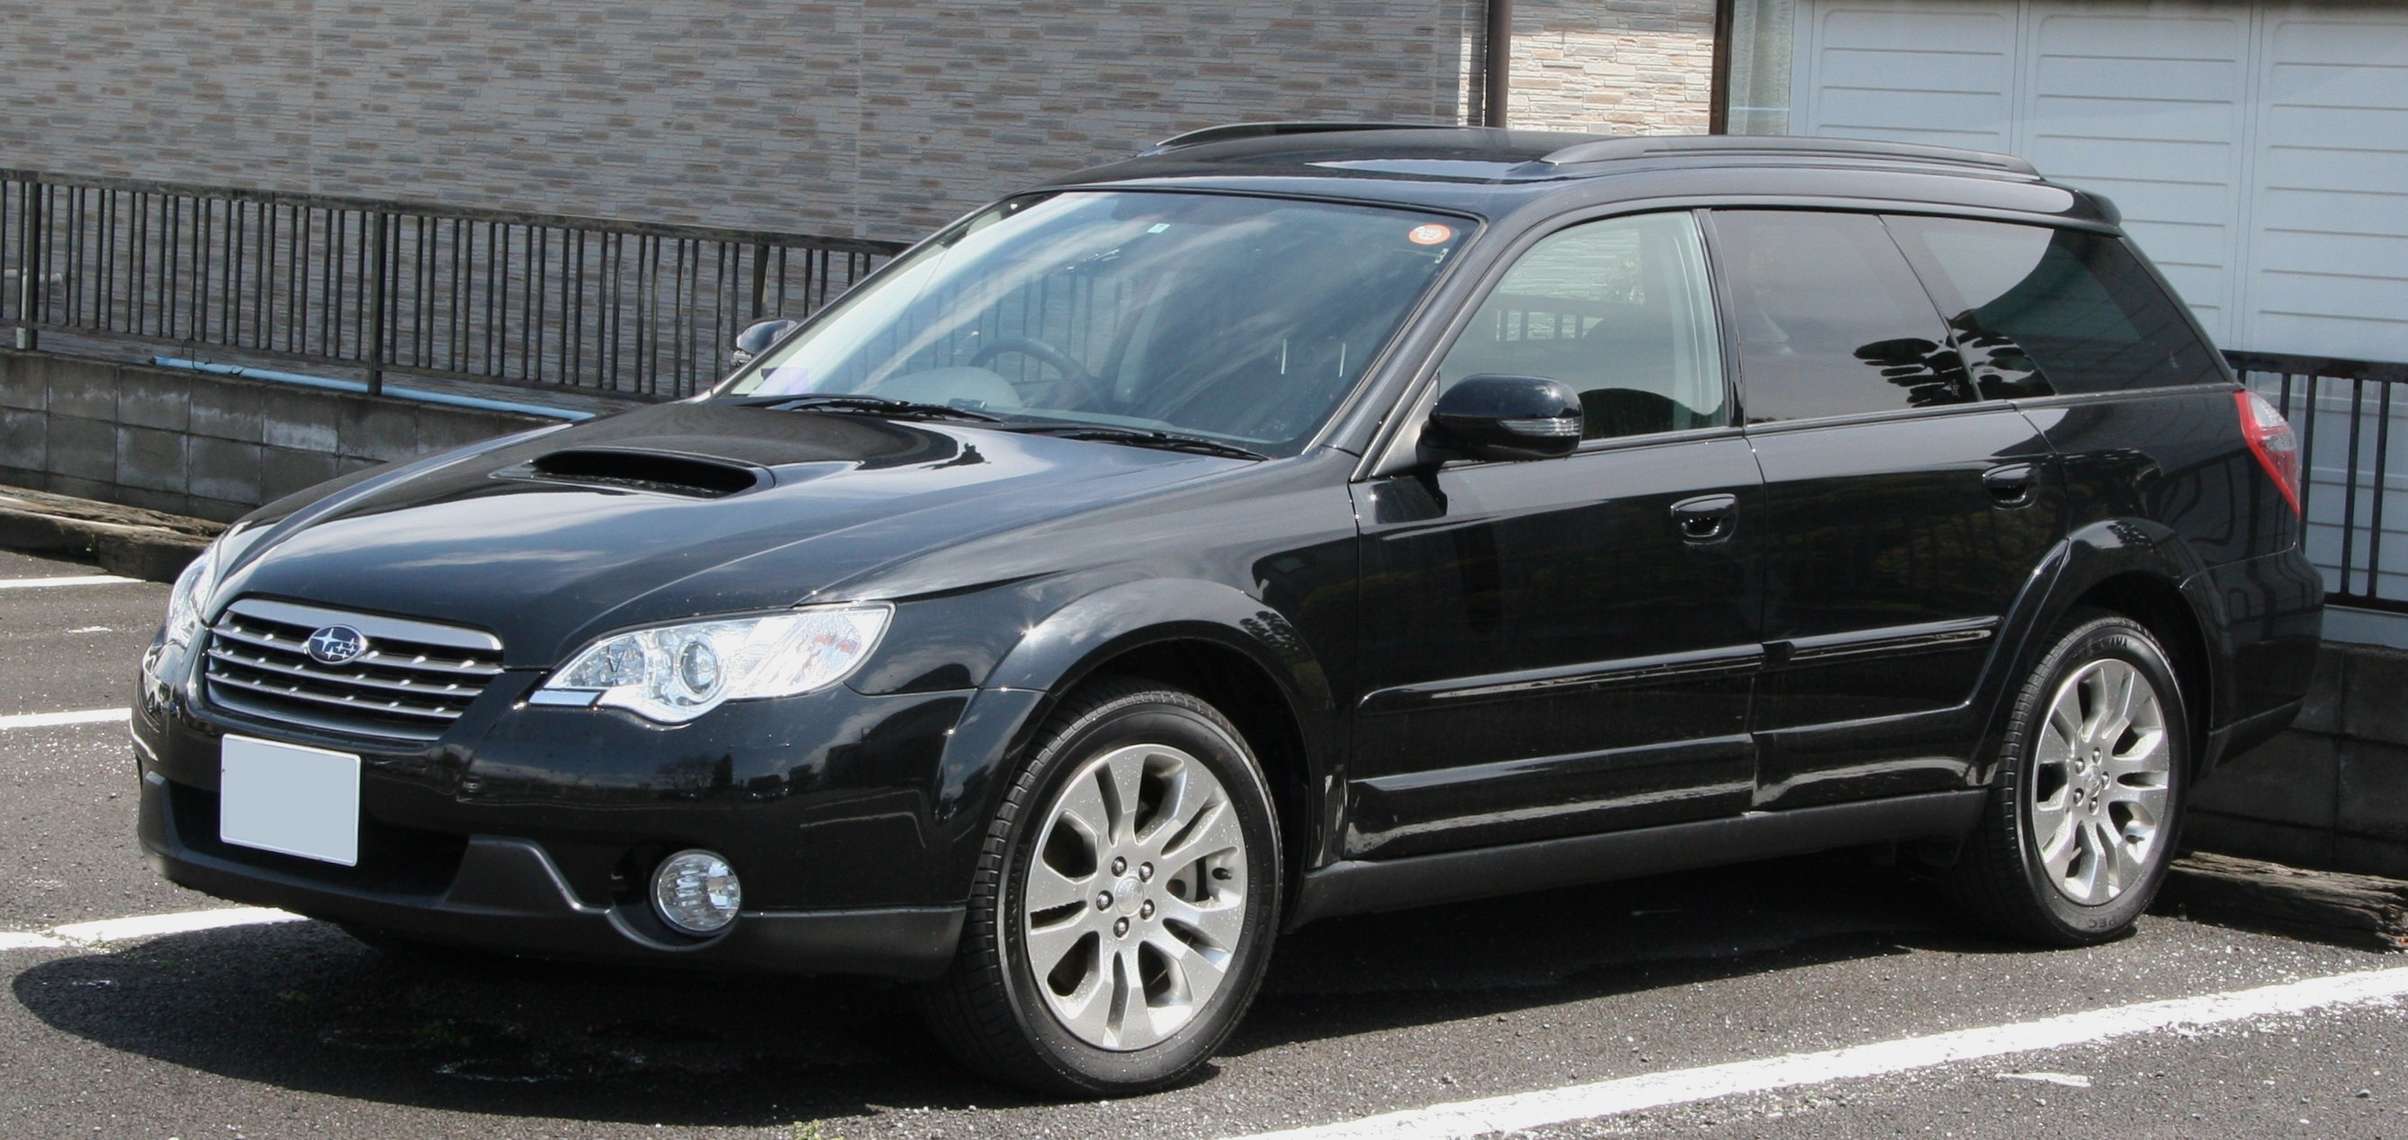 Subaru Legacy Outback #9468400